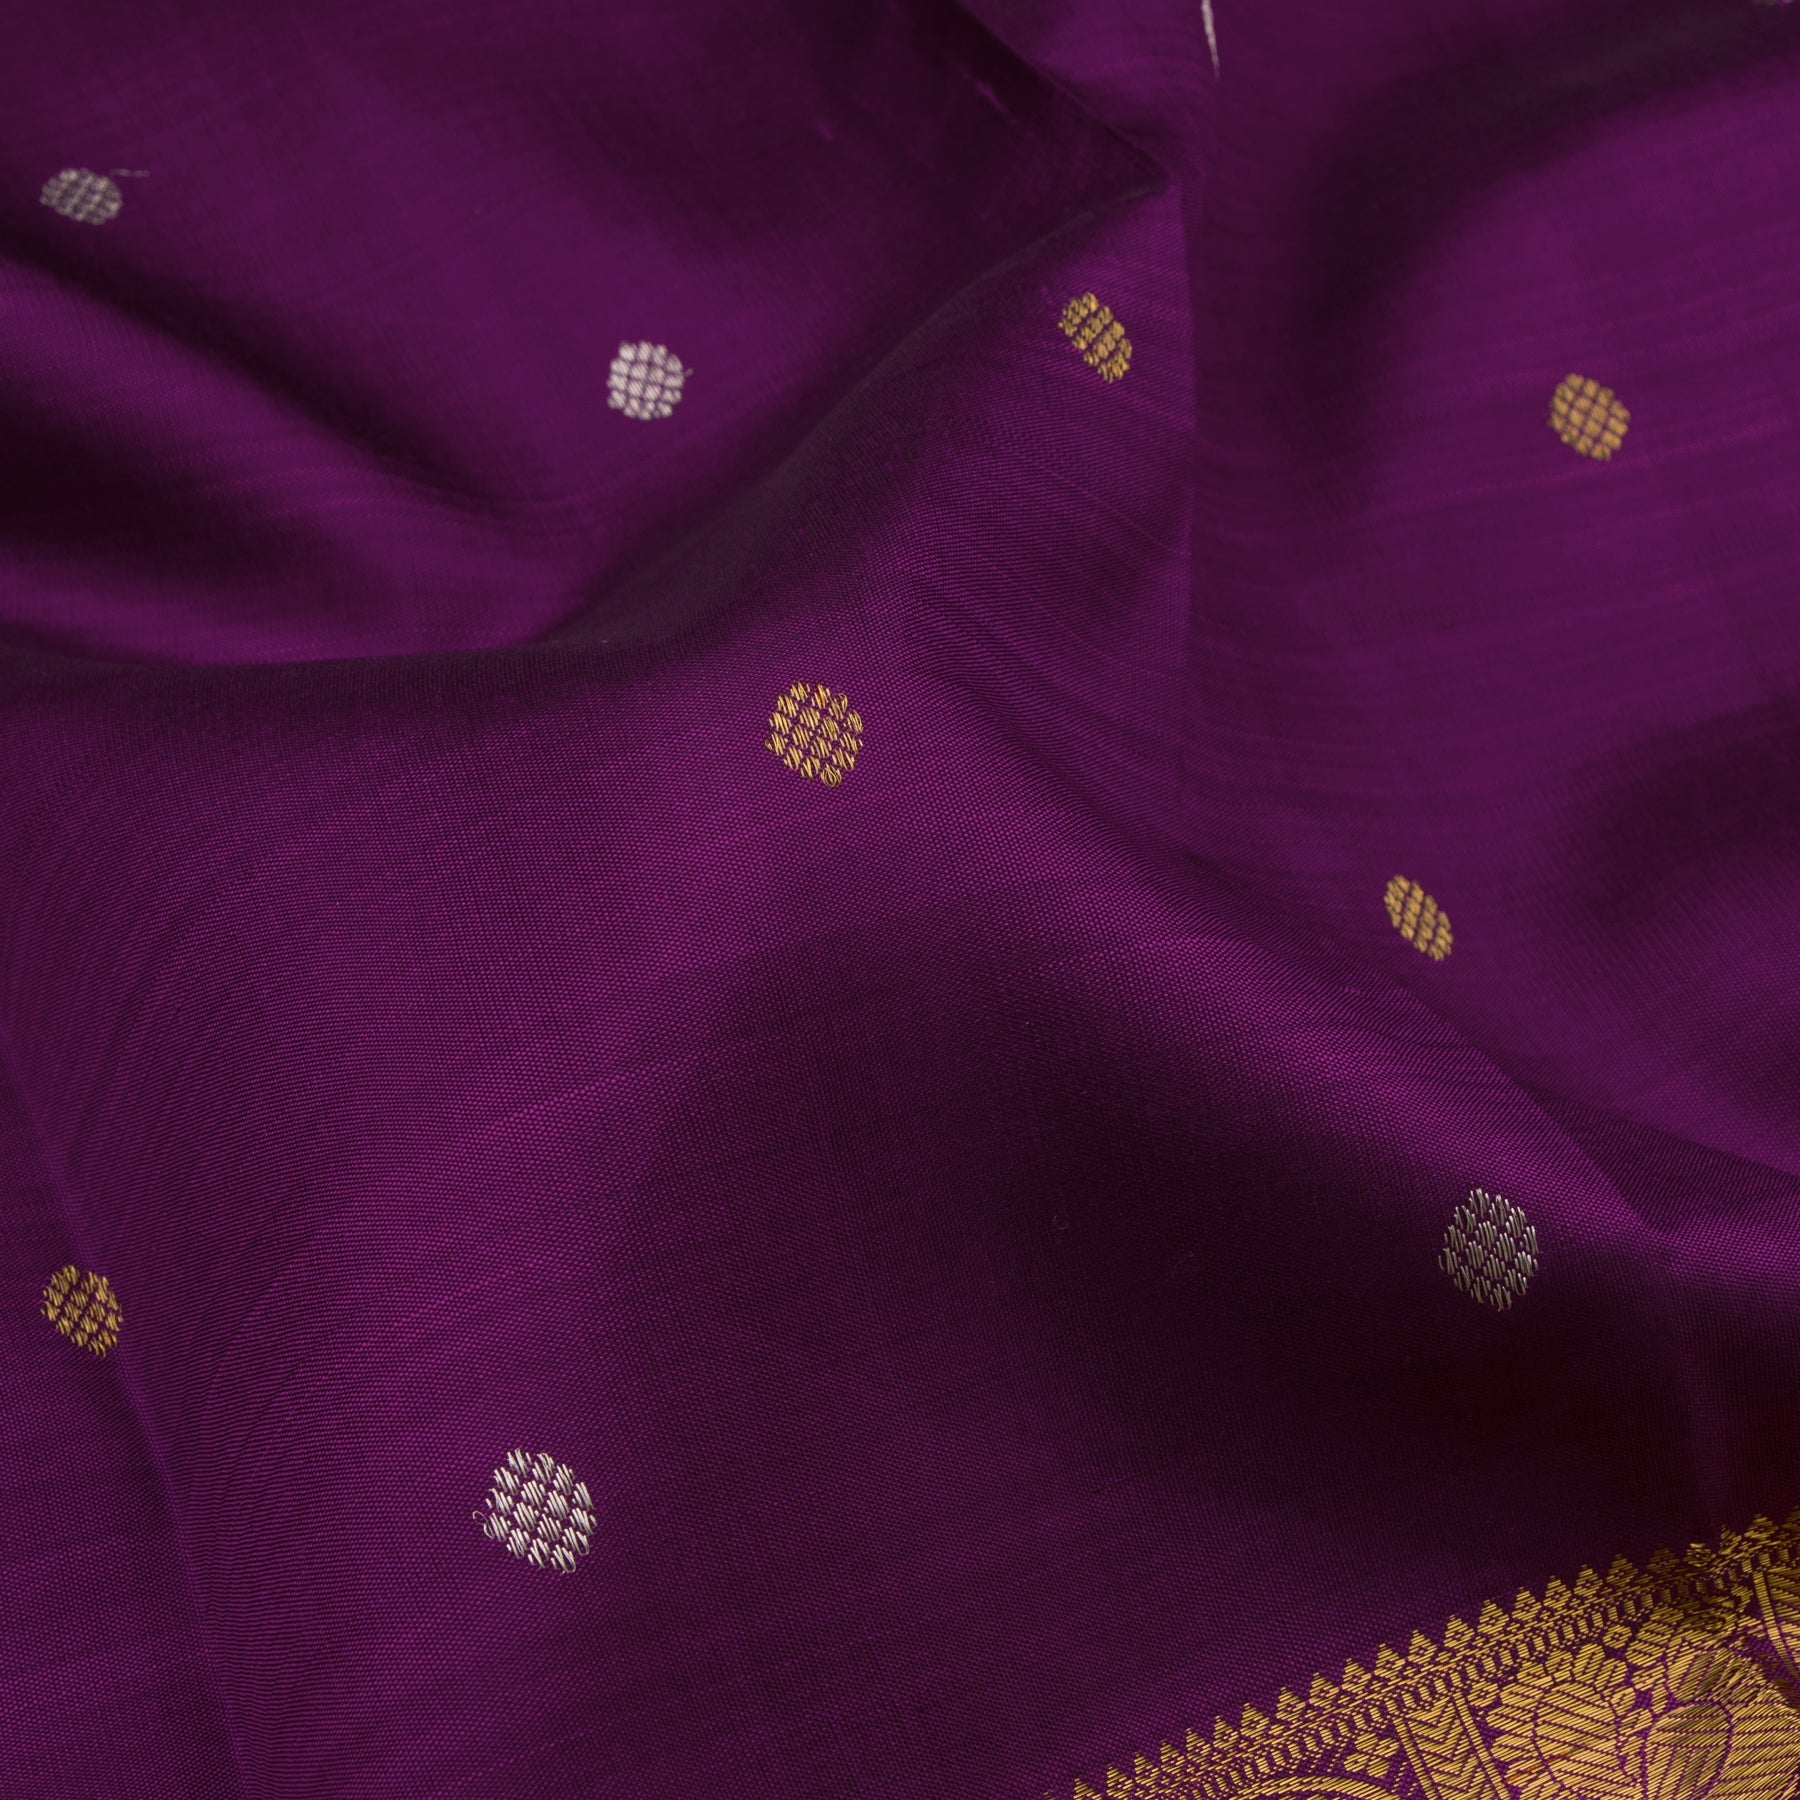 Kanakavalli Kanjivaram Silk Sari 21-110-HS001-09625 - Fabric View